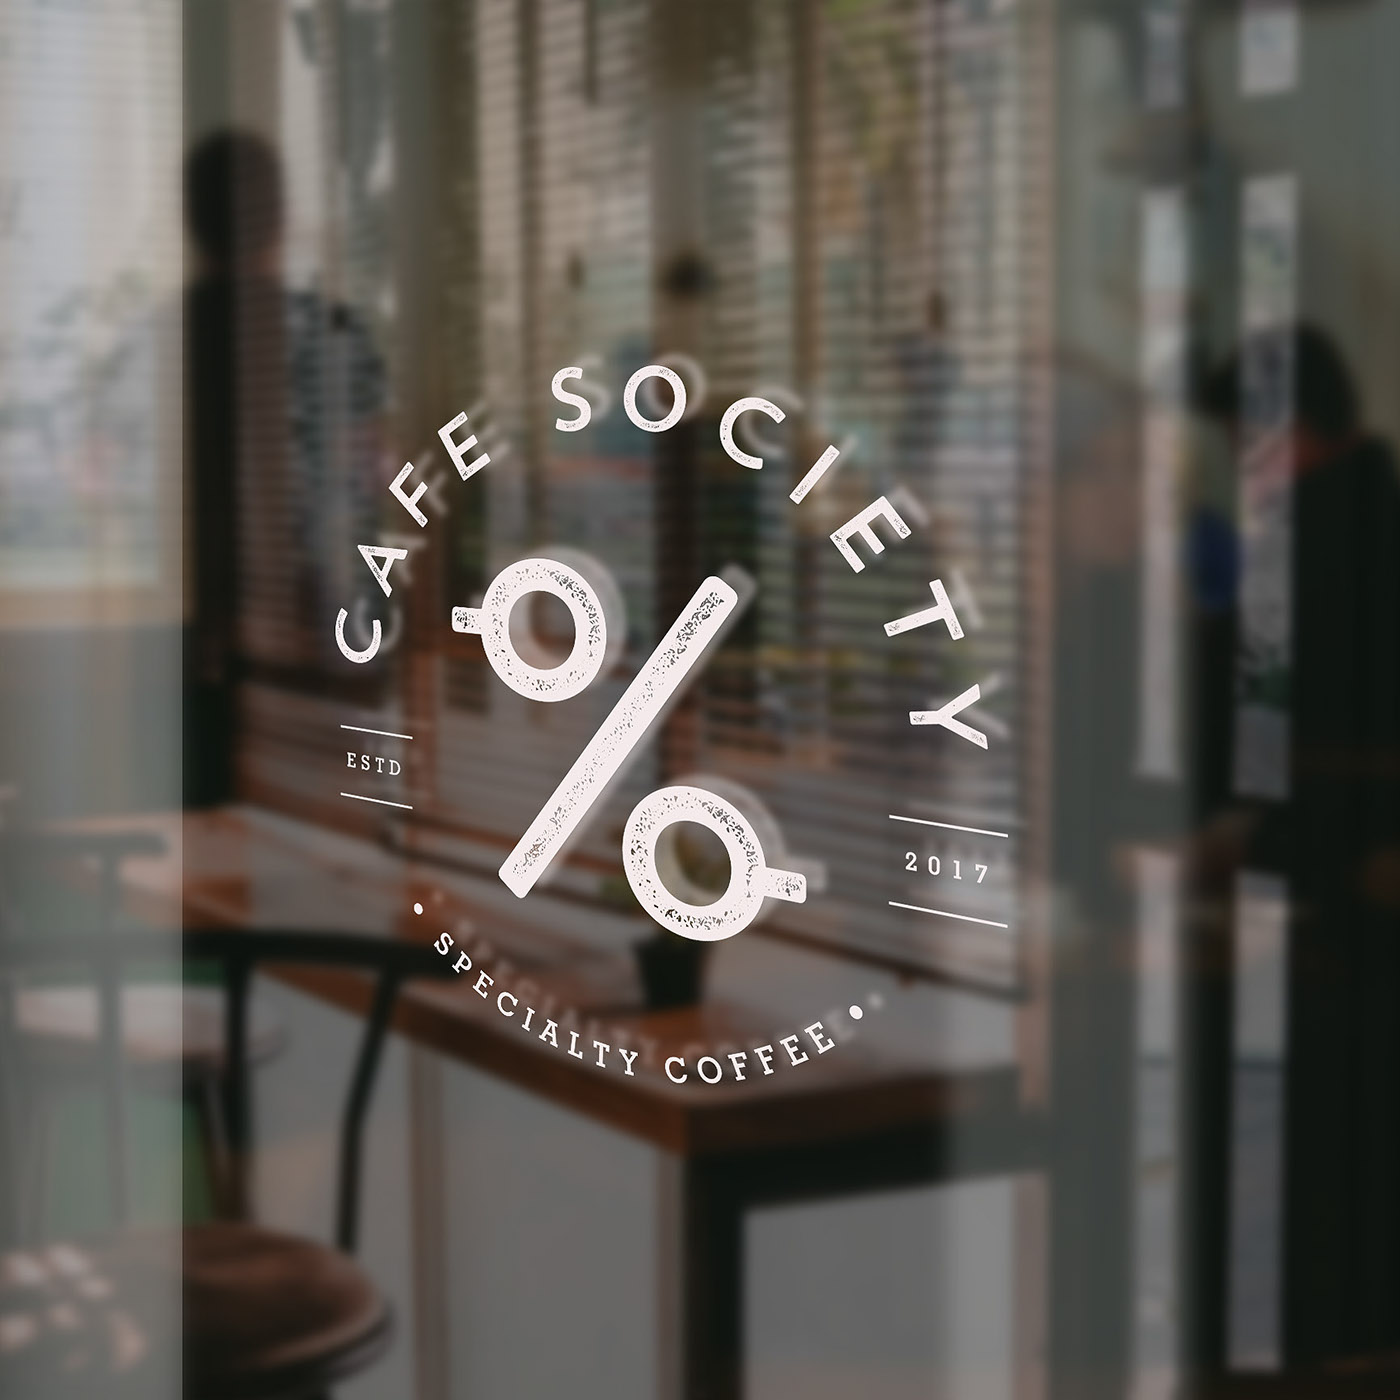 cafe society brand identity